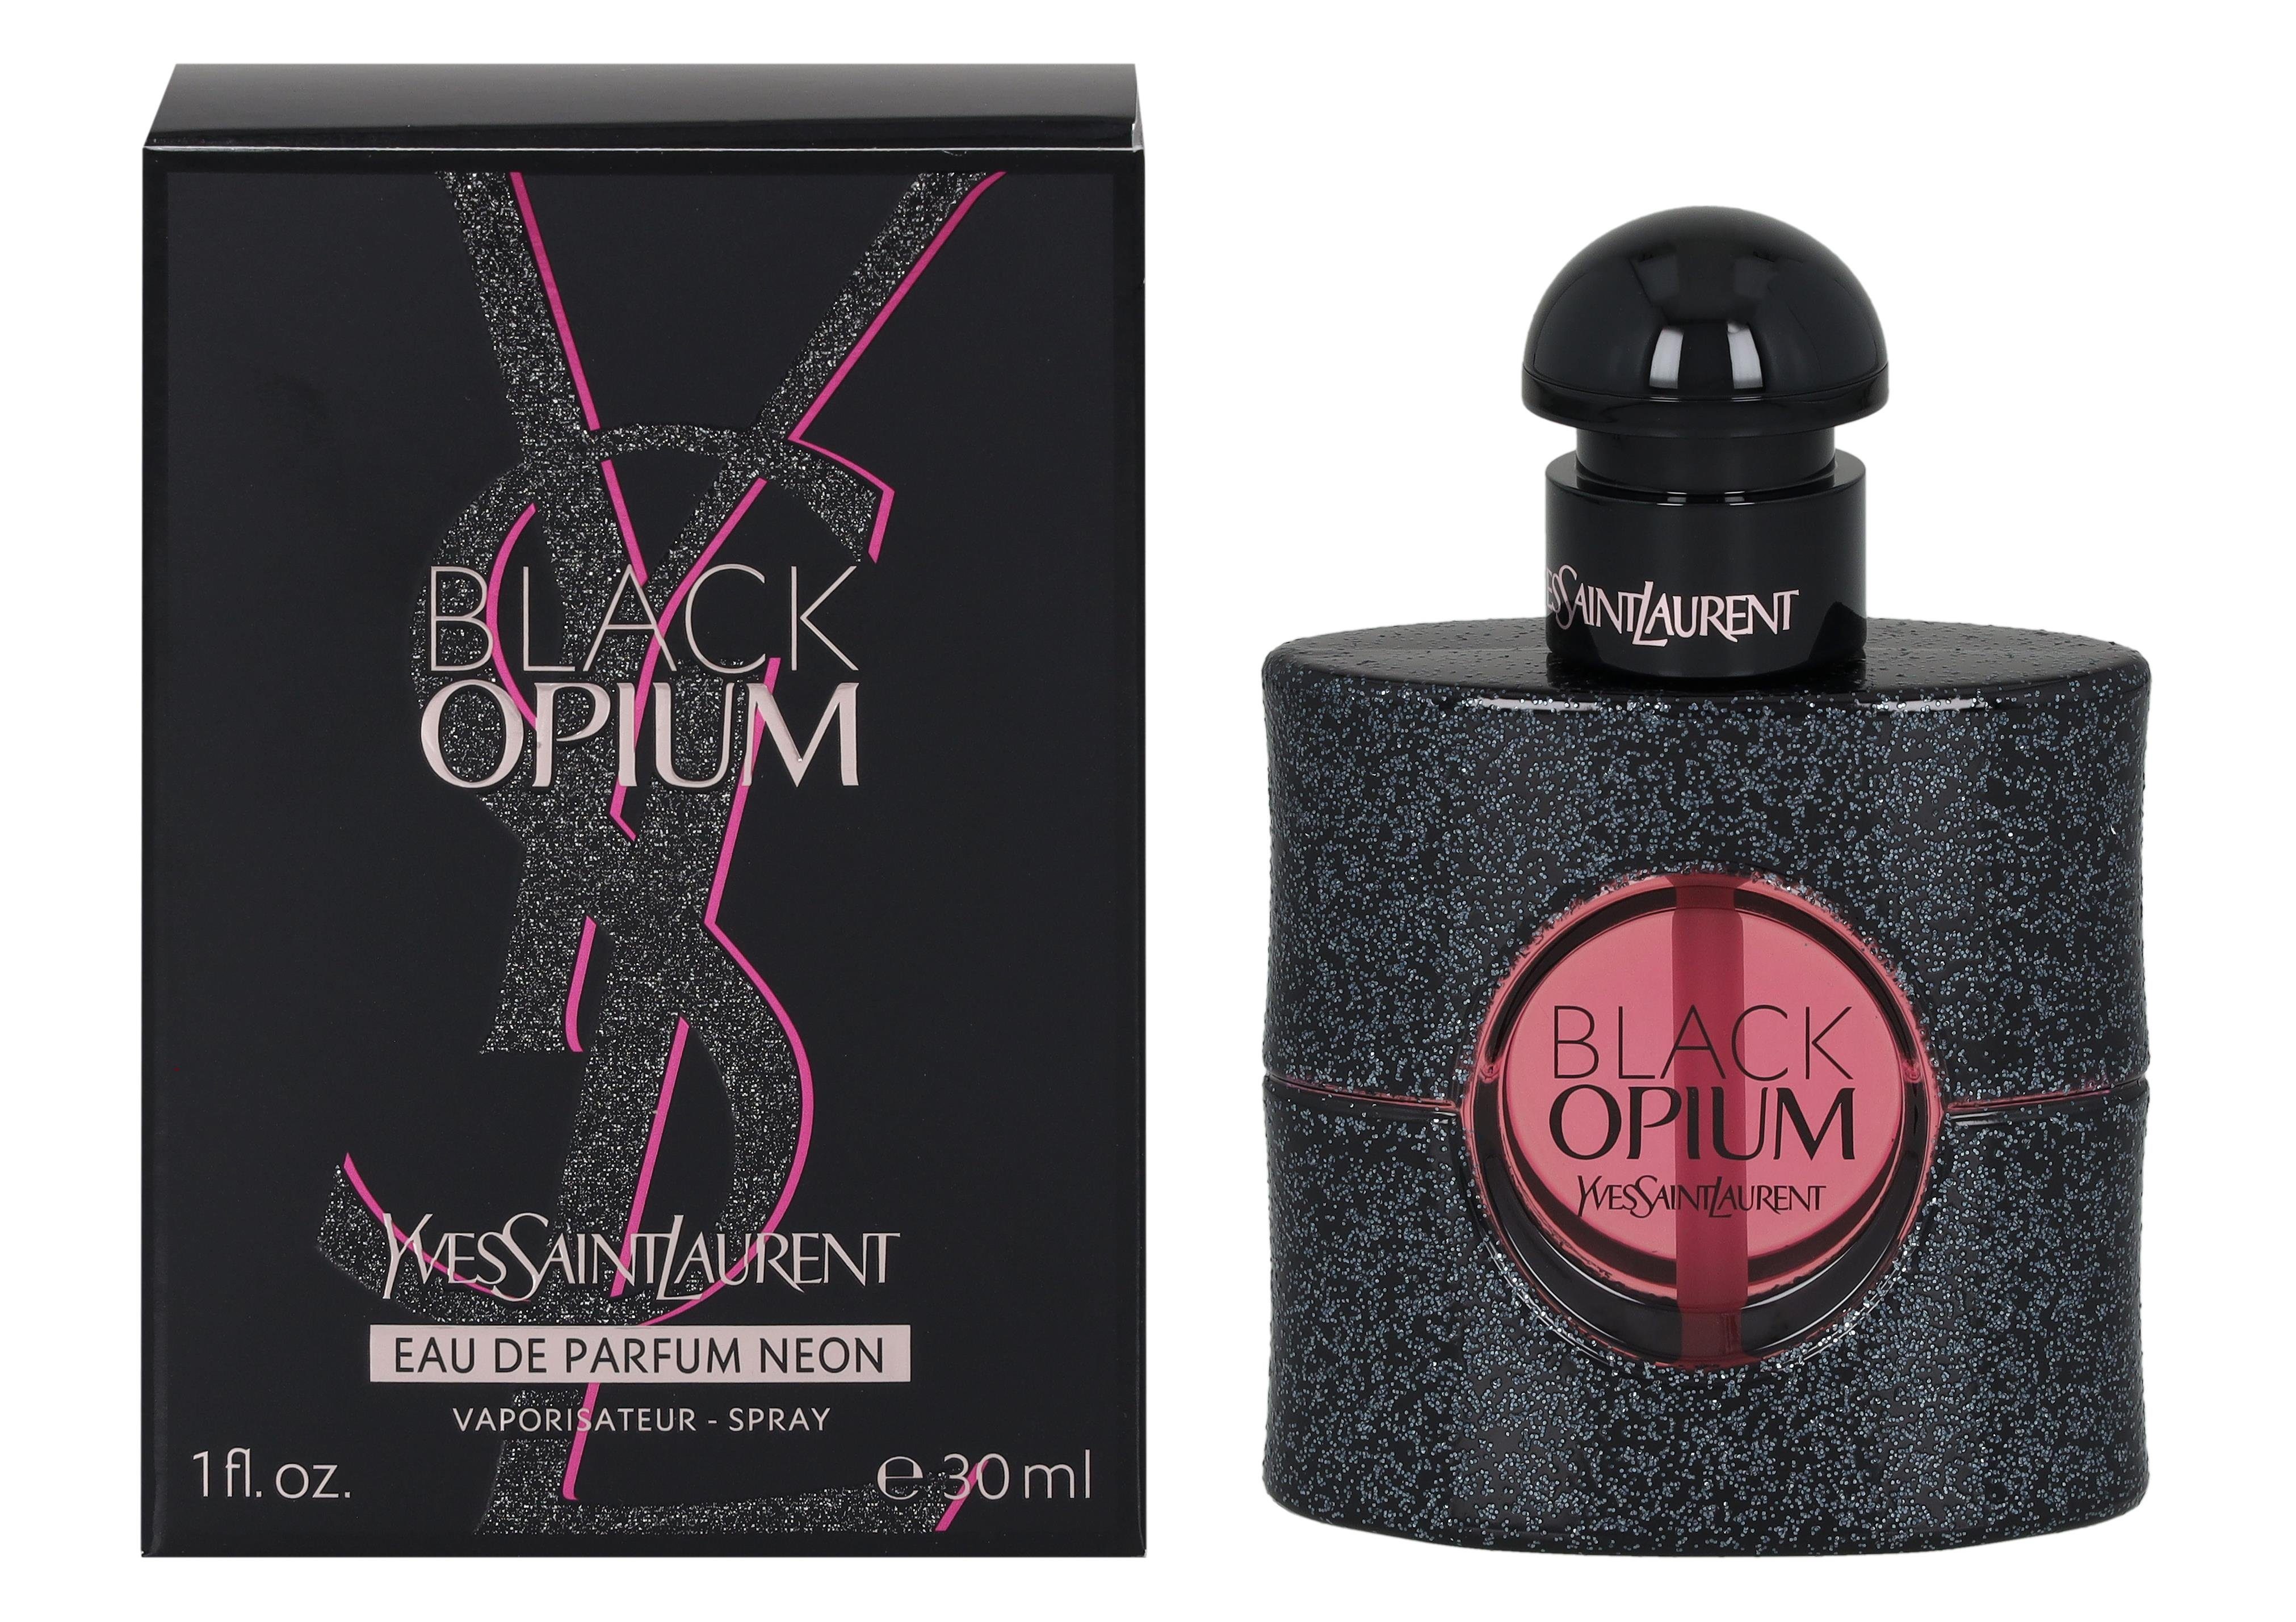 SAINT Saint Eau Laurent Parfum YVES Yves Eau de Opium Black LAURENT de Parfum Neon